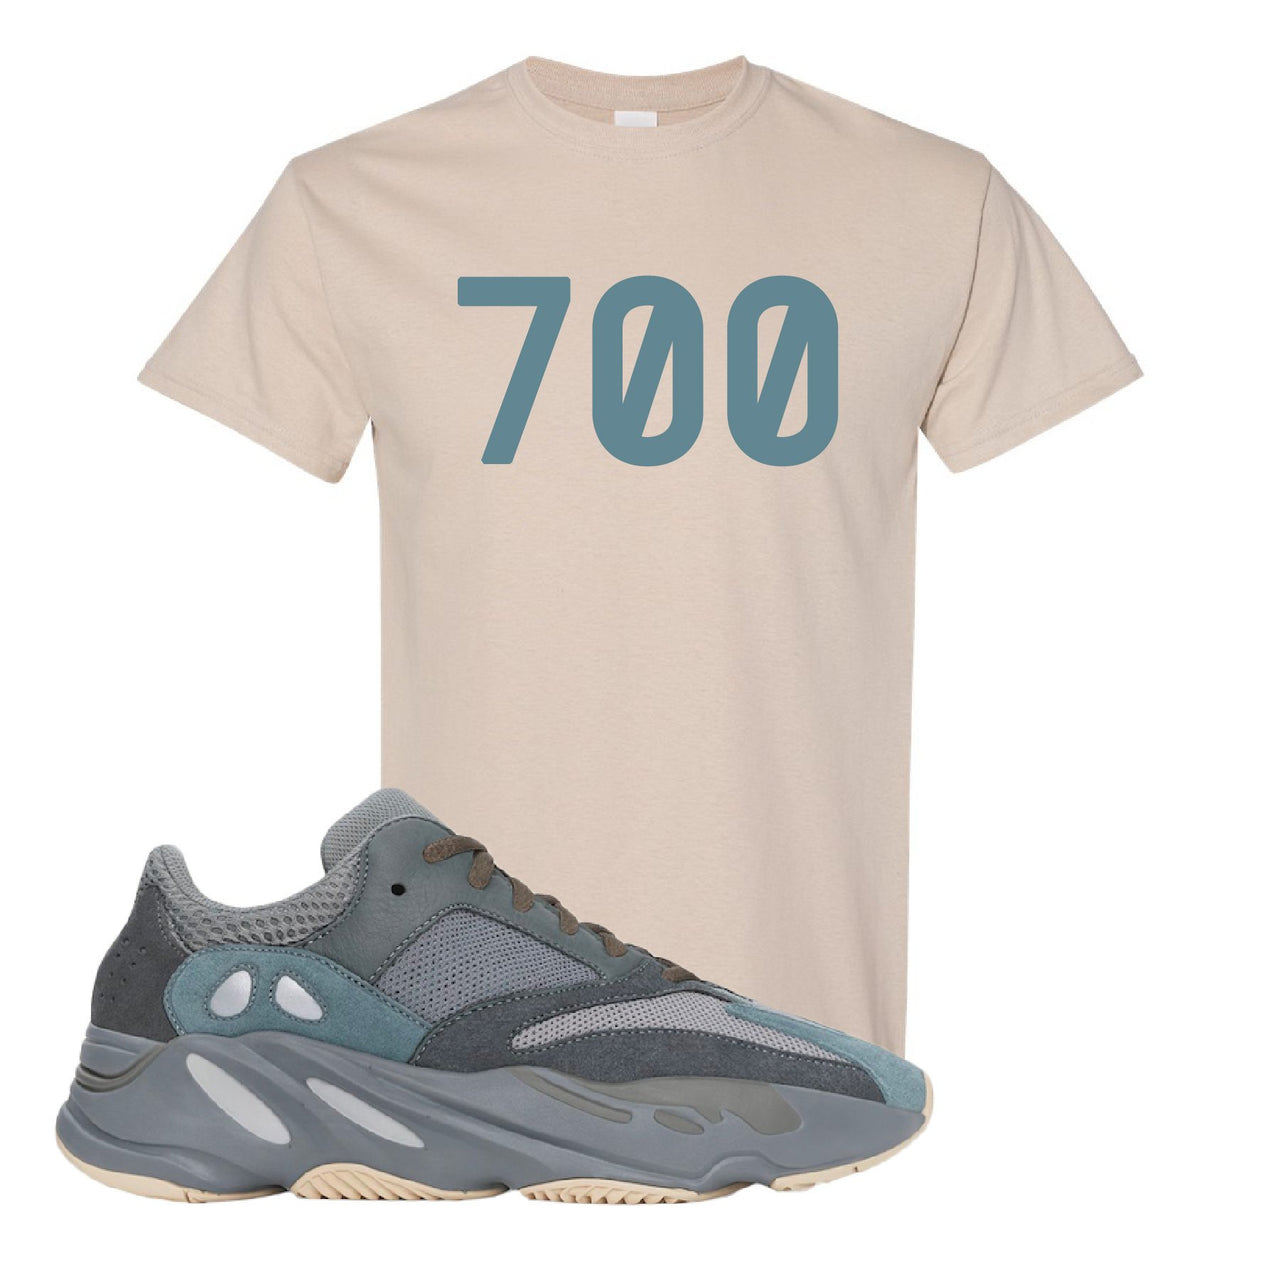 Yeezy Boost 700 Teal Blue 700 Sand Sneaker Hook Up T-Shirt